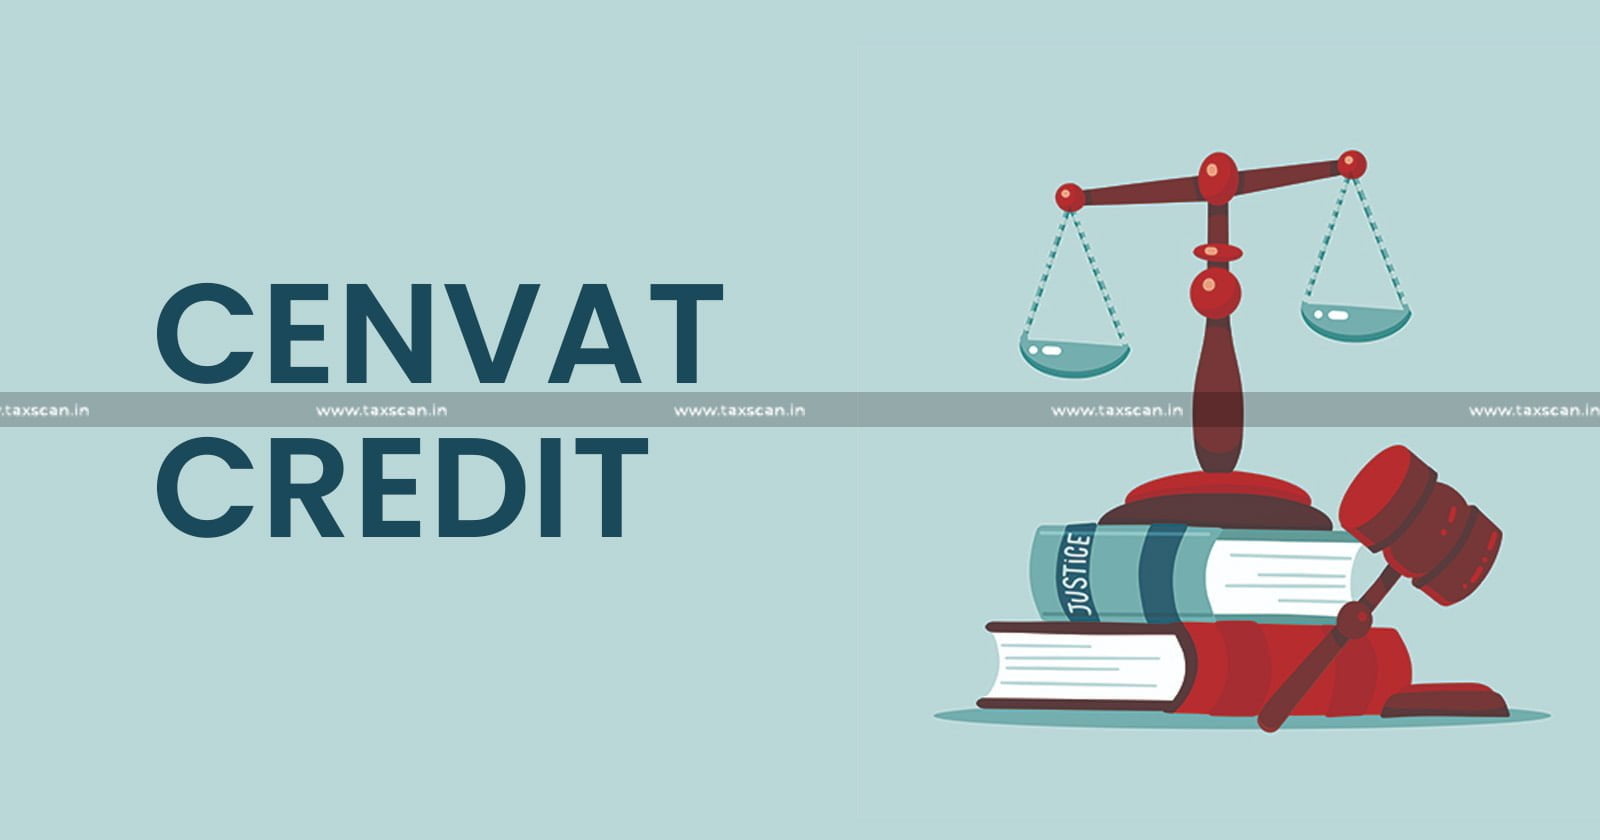 Cenvat Credit - Input Service - Management - Business Consultancy Service - Consultancy Service - CESTAT - Customs - Excise - Service Tax - Taxscan